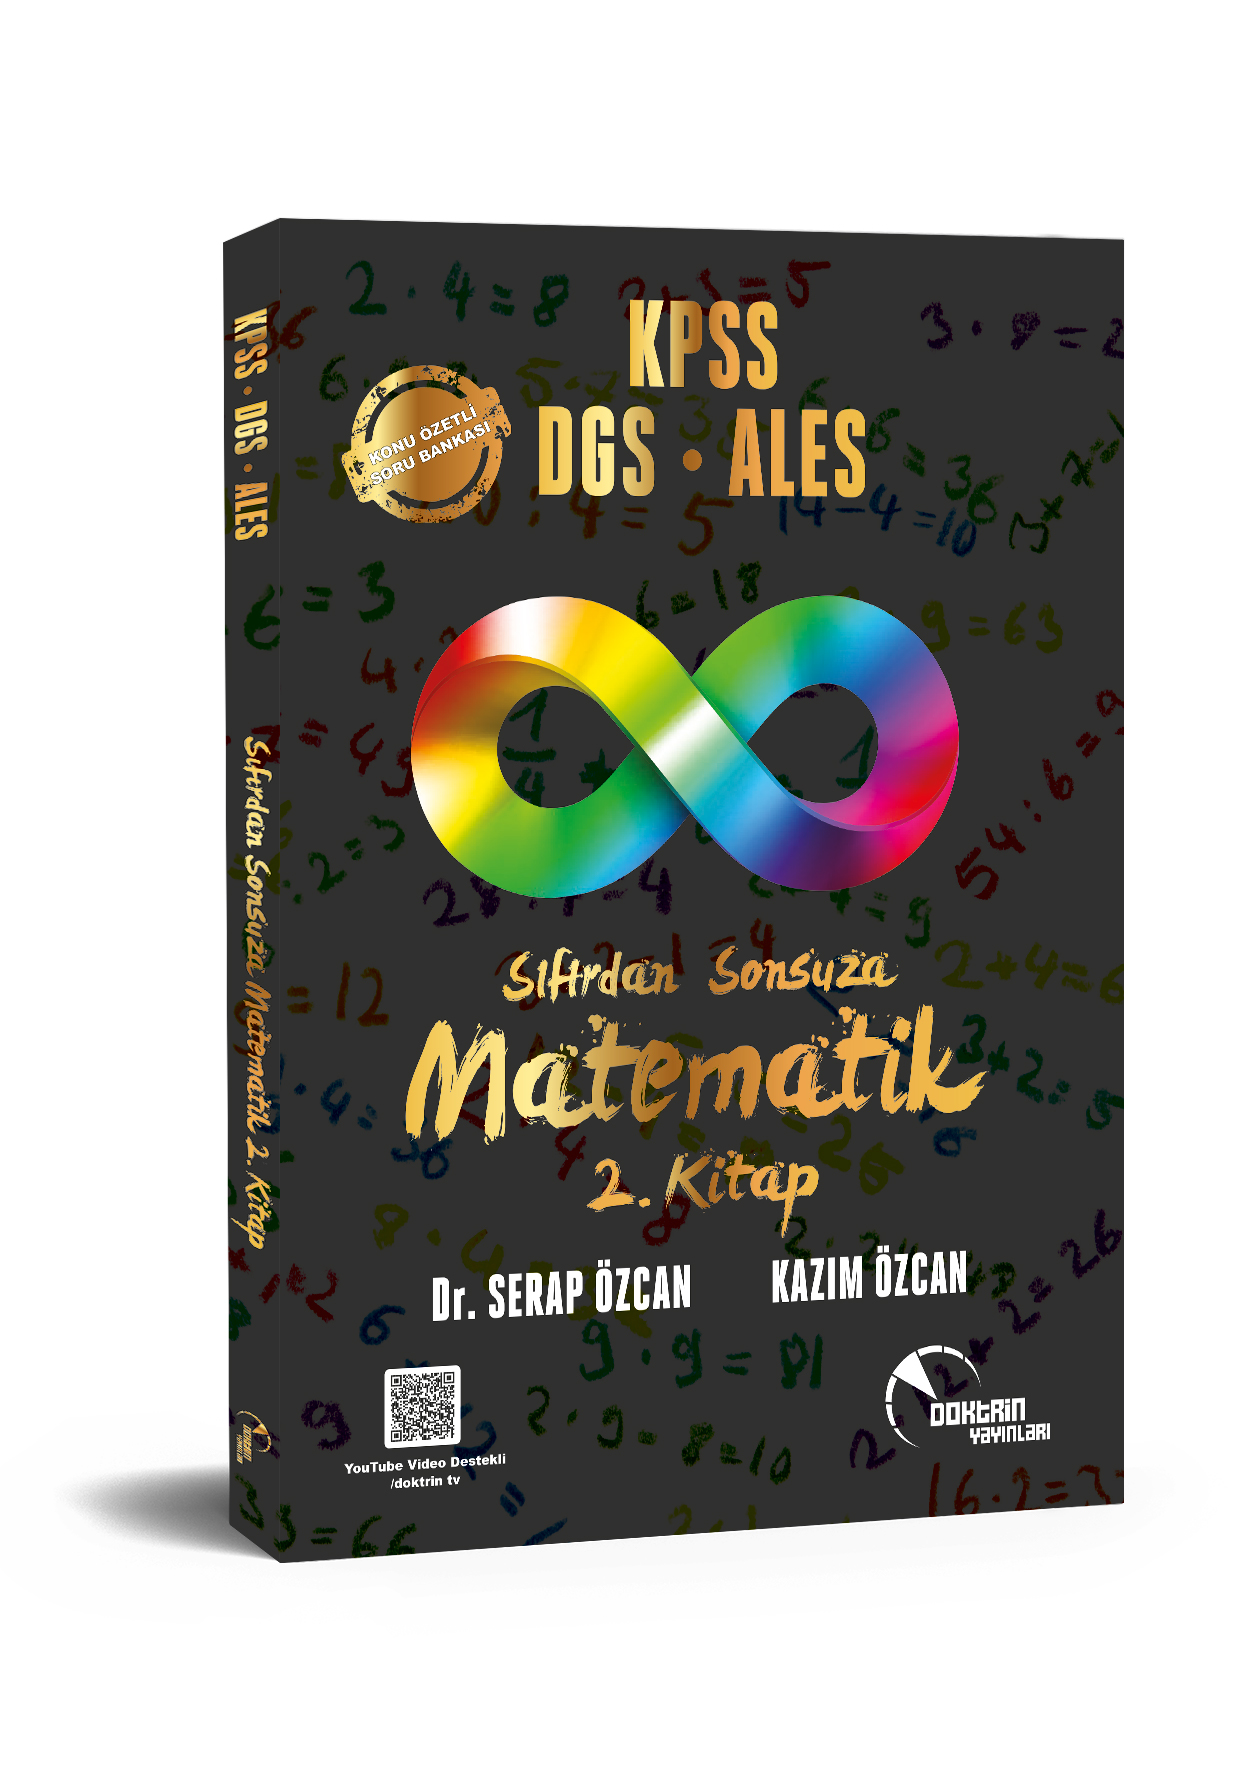 KPSS / DGS / ALES Sıfırdan Sonsuza Matematik (2.Kitap) Konu Özetli Soru Bankası